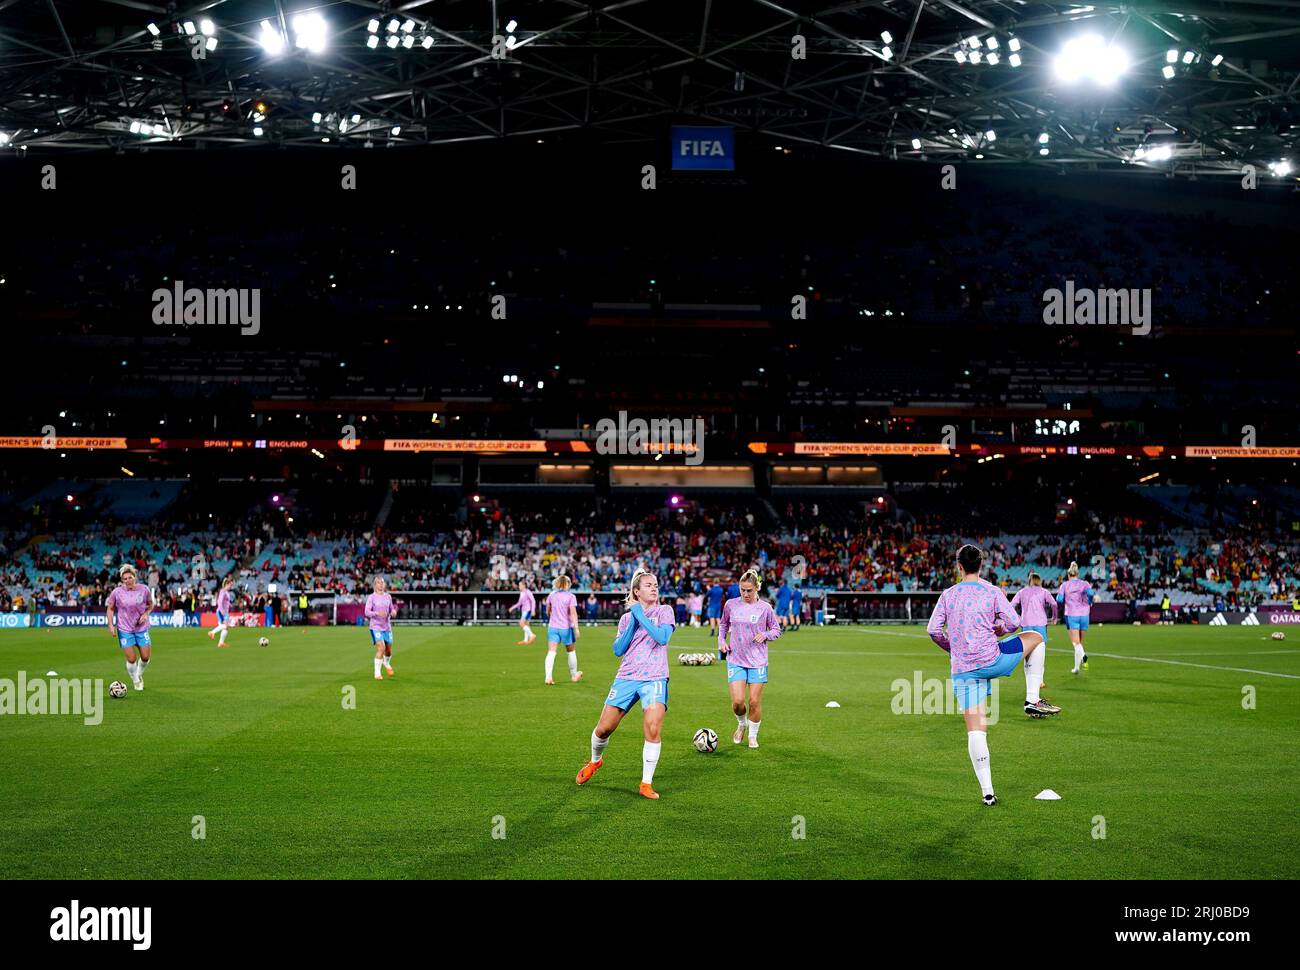 Die englischen Spieler wärmen sich vor dem Endspiel der FIFA Frauen-Weltmeisterschaft im Stadion Australien, Sydney, auf. Bilddatum: Sonntag, 20. August 2023. Stockfoto